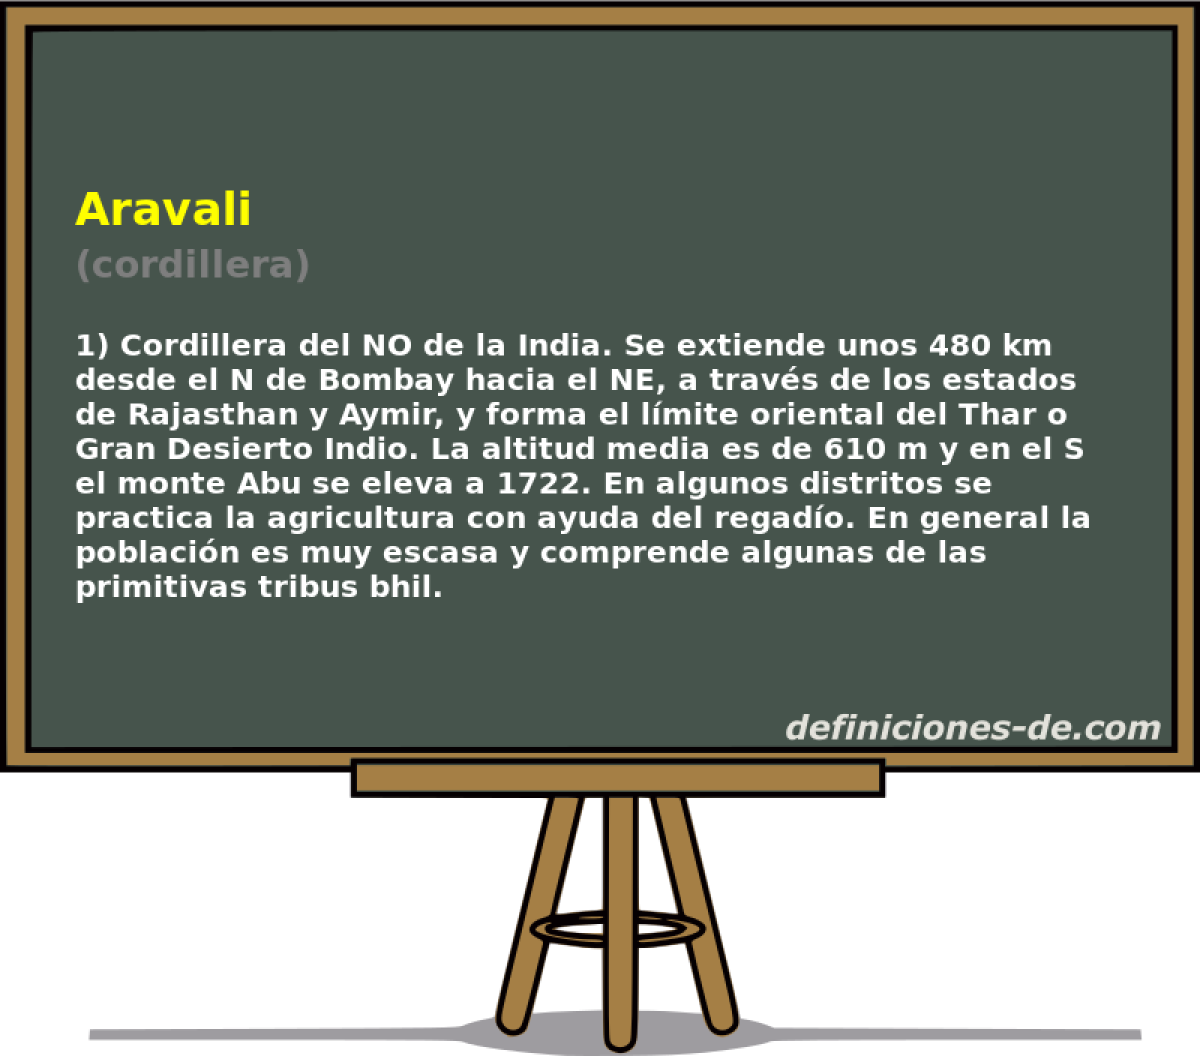 Aravali (cordillera)